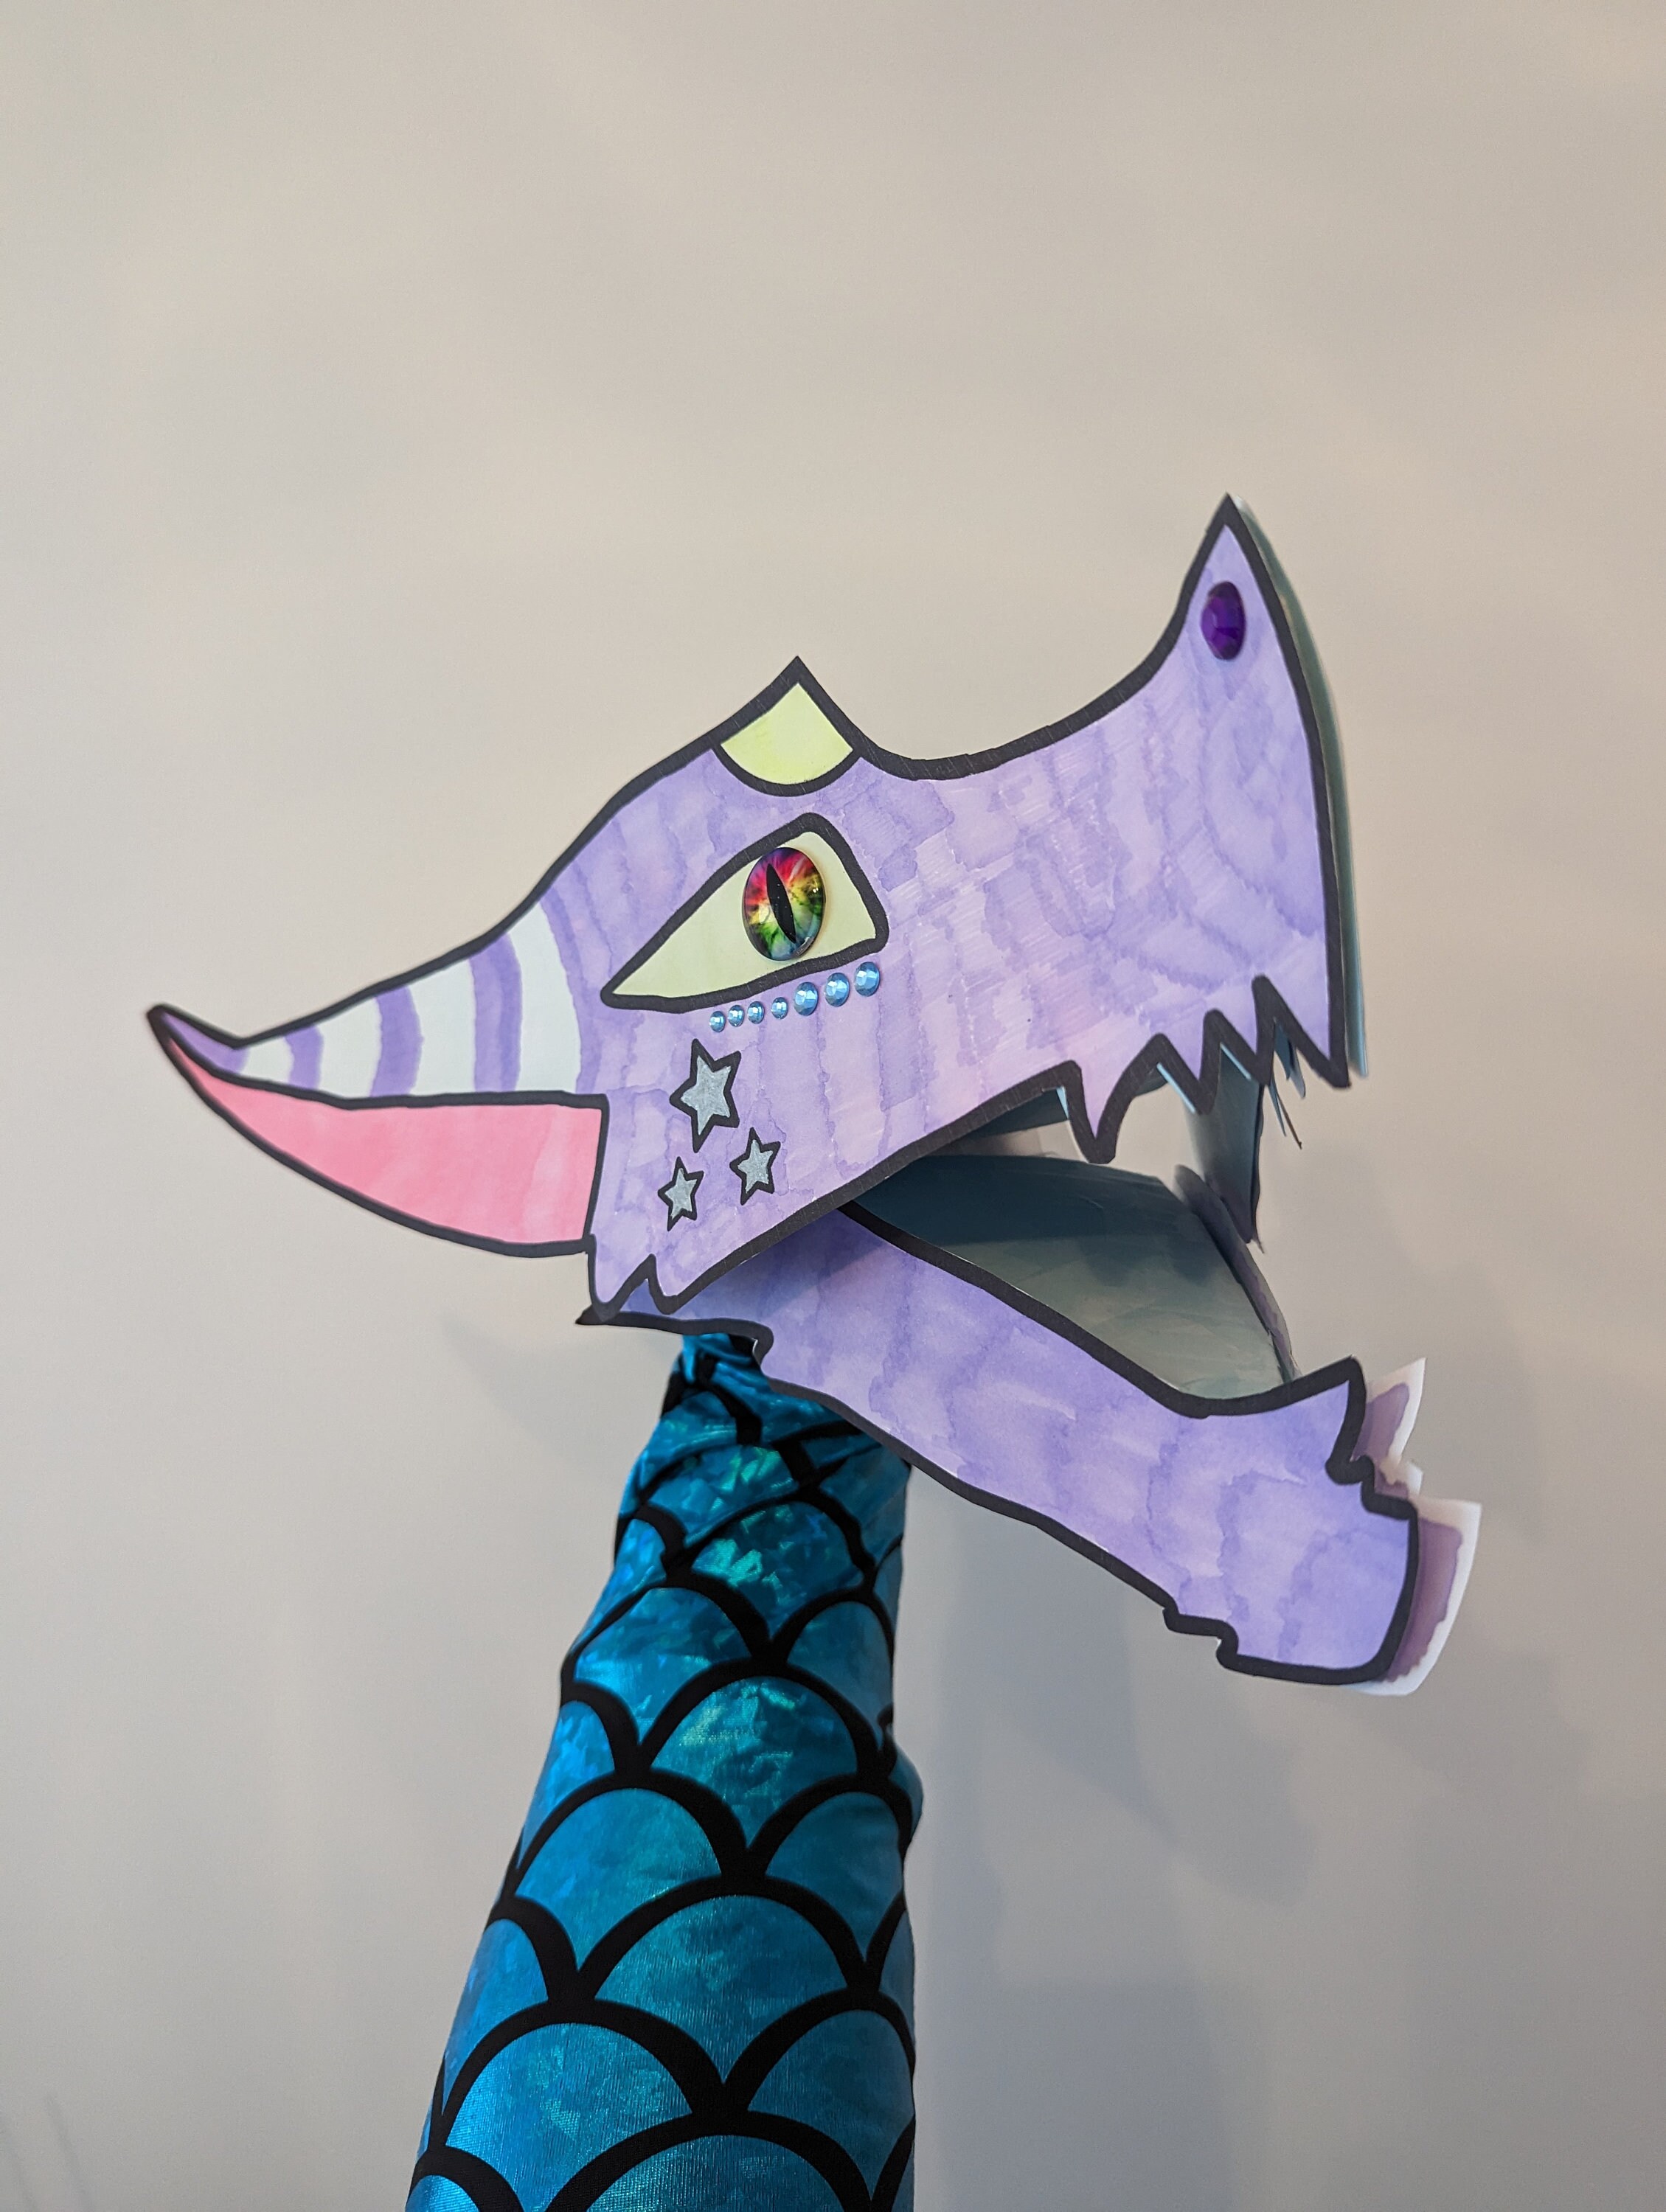 WATERCOLOR FUN - Accordion Dragon Puppet (age 5-8) — Creative World Art  Center